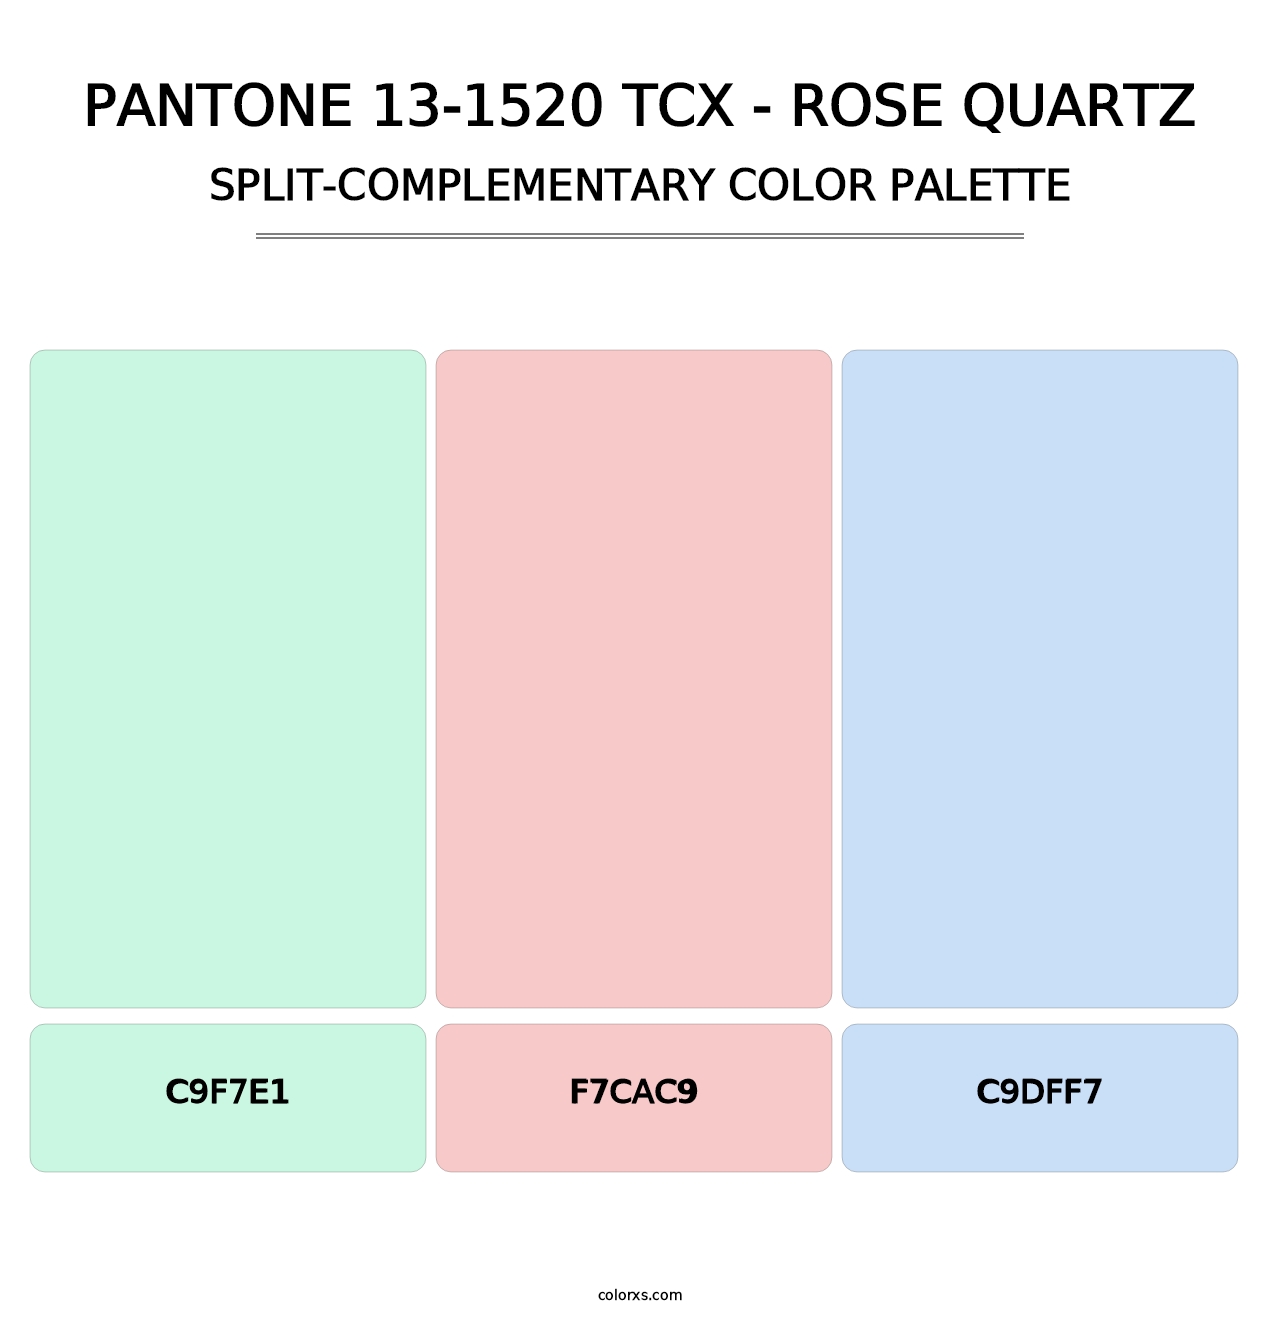 PANTONE 13-1520 TCX - Rose Quartz - Split-Complementary Color Palette